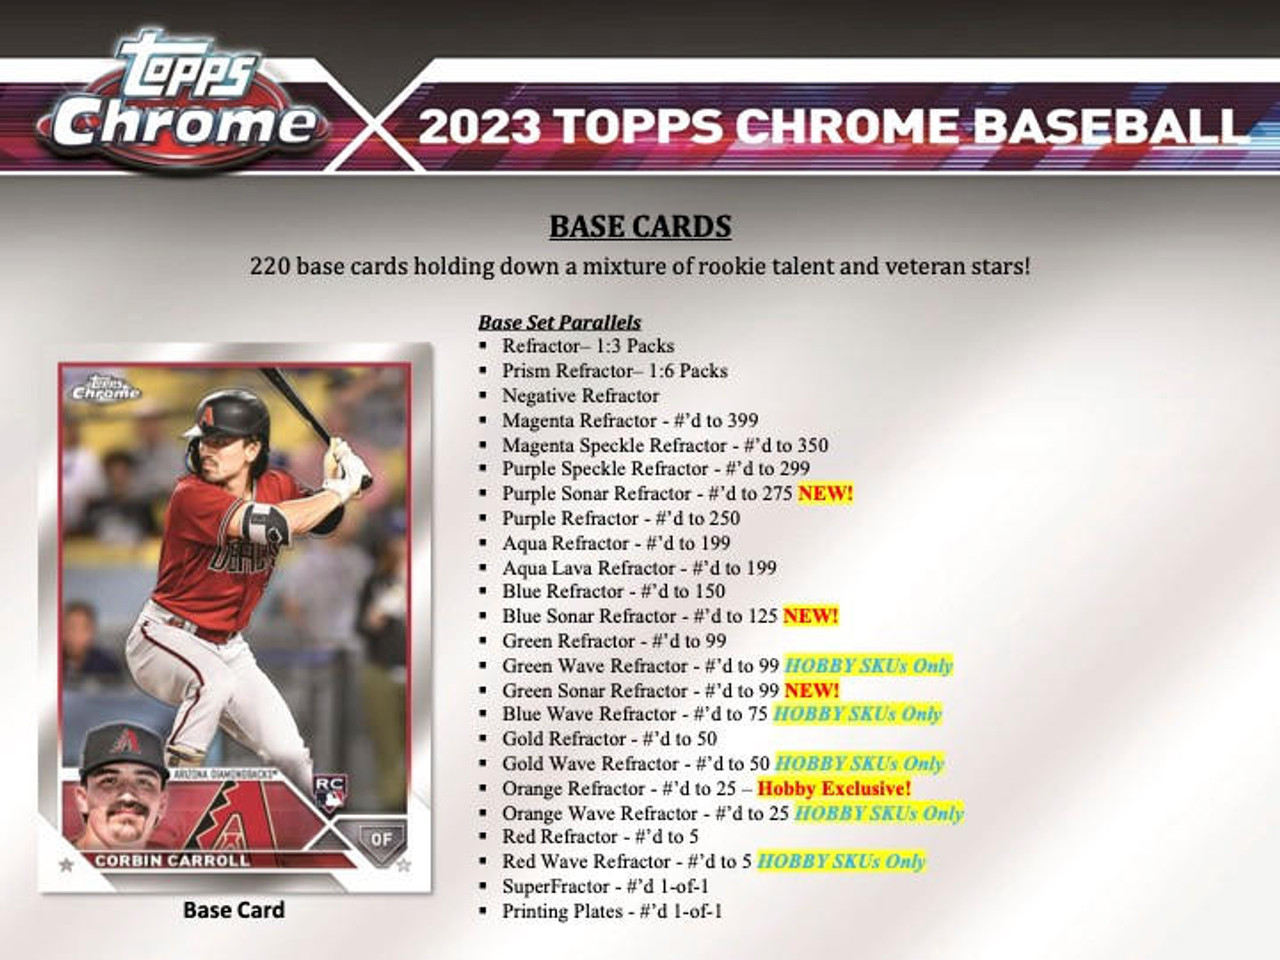 St. Louis Cardinals - 2023 Topps Chrome Baseball PYT Break - (2) Hobby Box